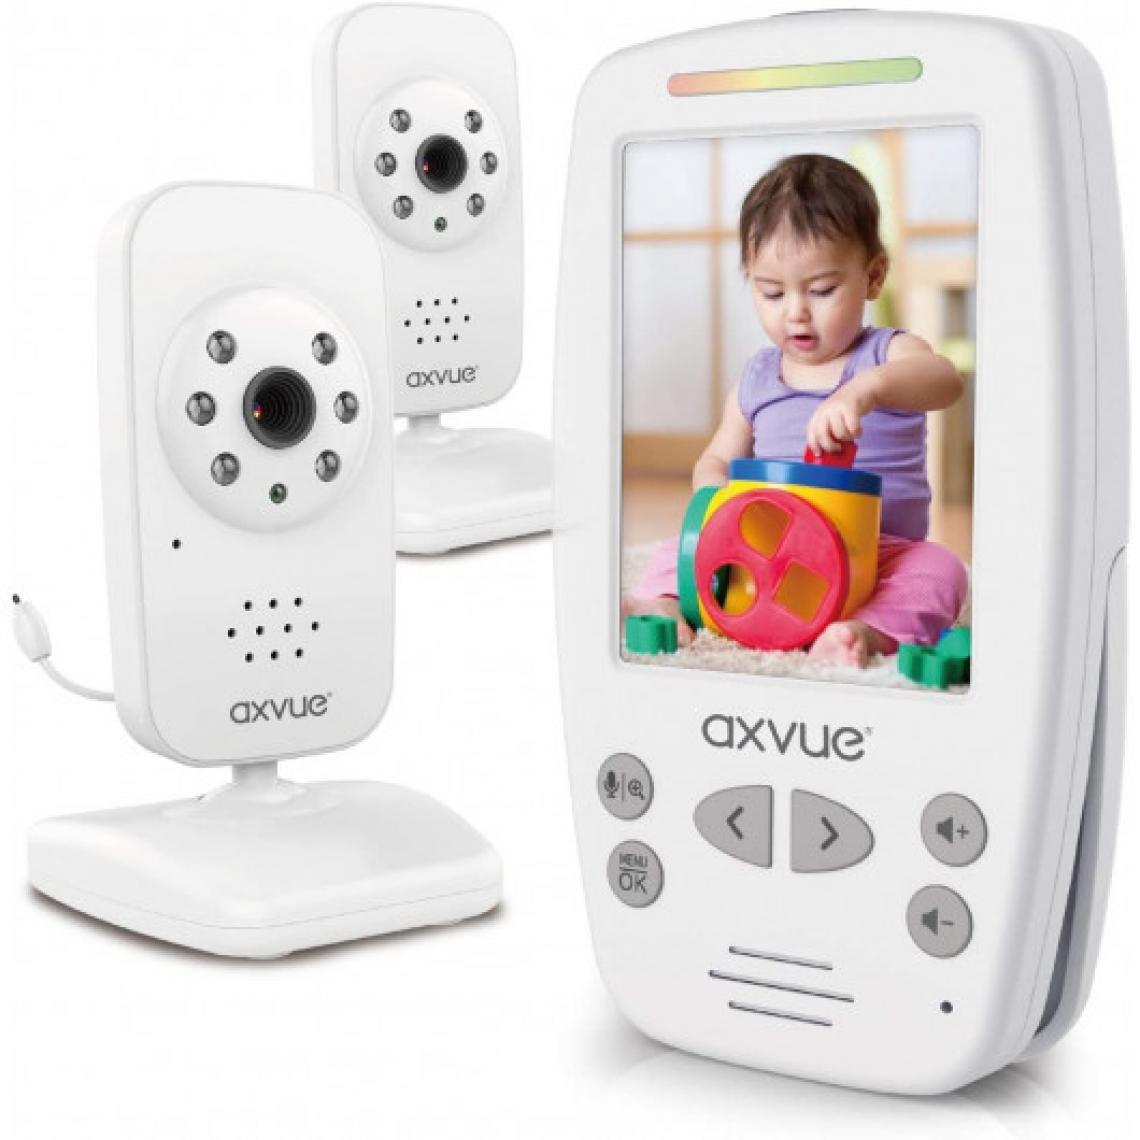 Ofs Selection - AXVUE E662, 2 caméras pour une grande surveillance - Babyphone connecté